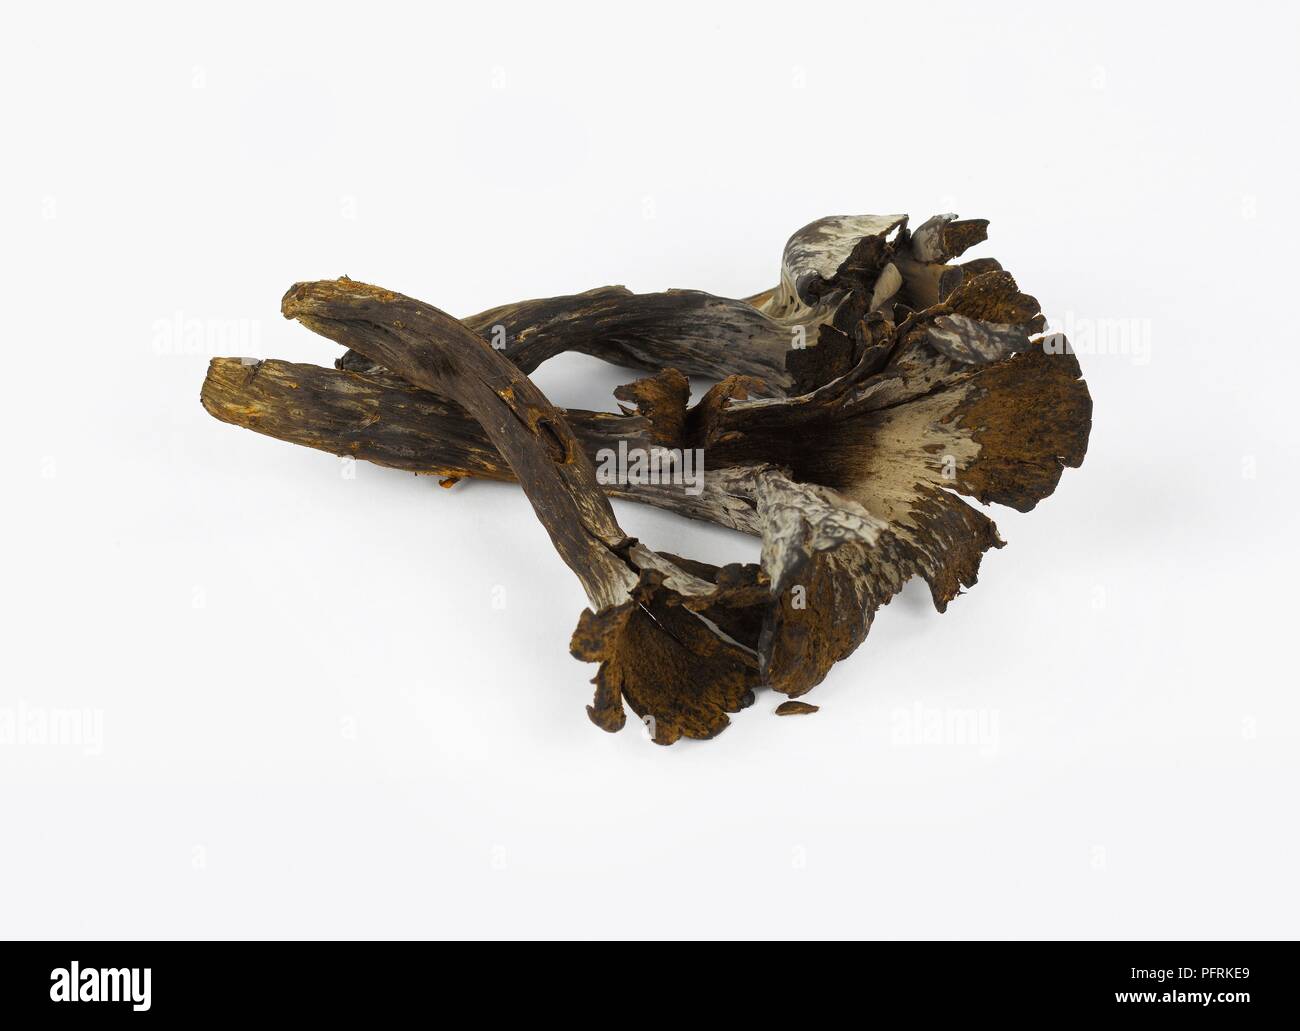 Dried Black Trumpet (Craterellus cornucopioides) mushrooms Stock Photo